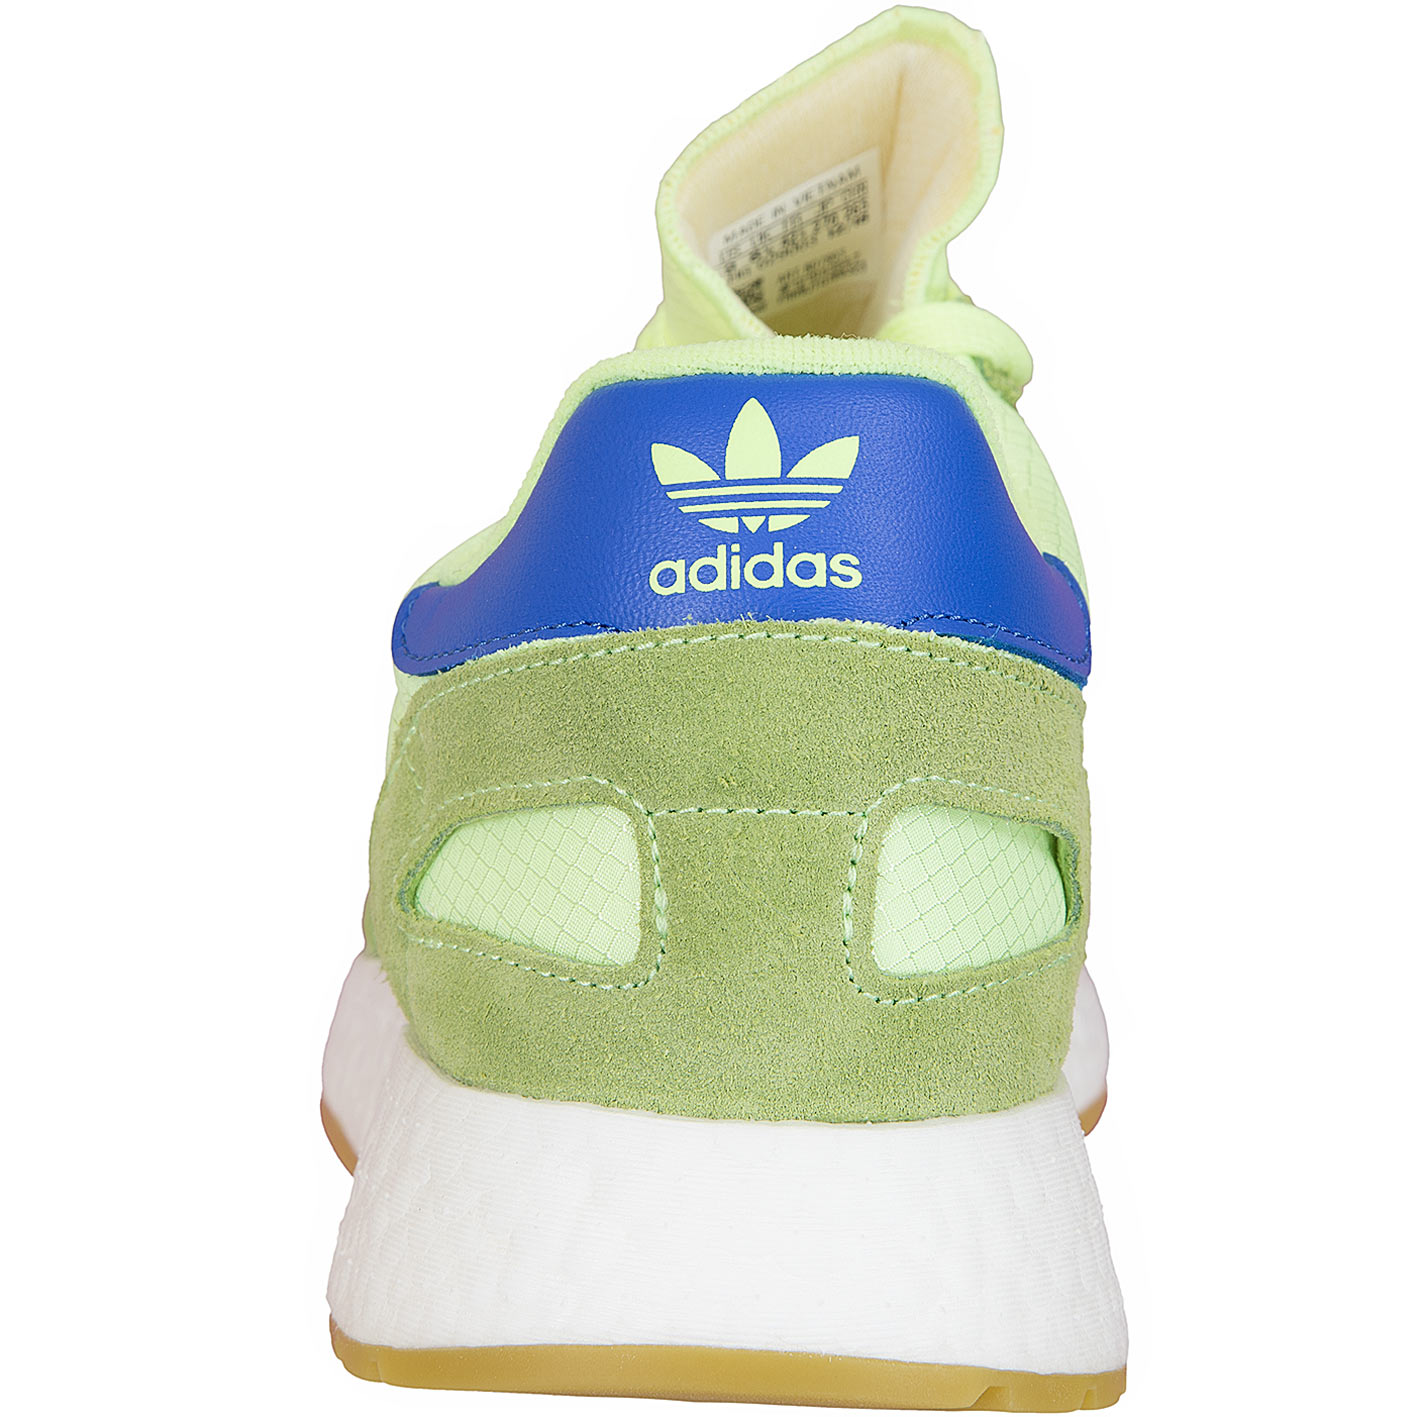 ☆ Adidas Originals Sneaker I-5923 grün/blau - hier bestellen!